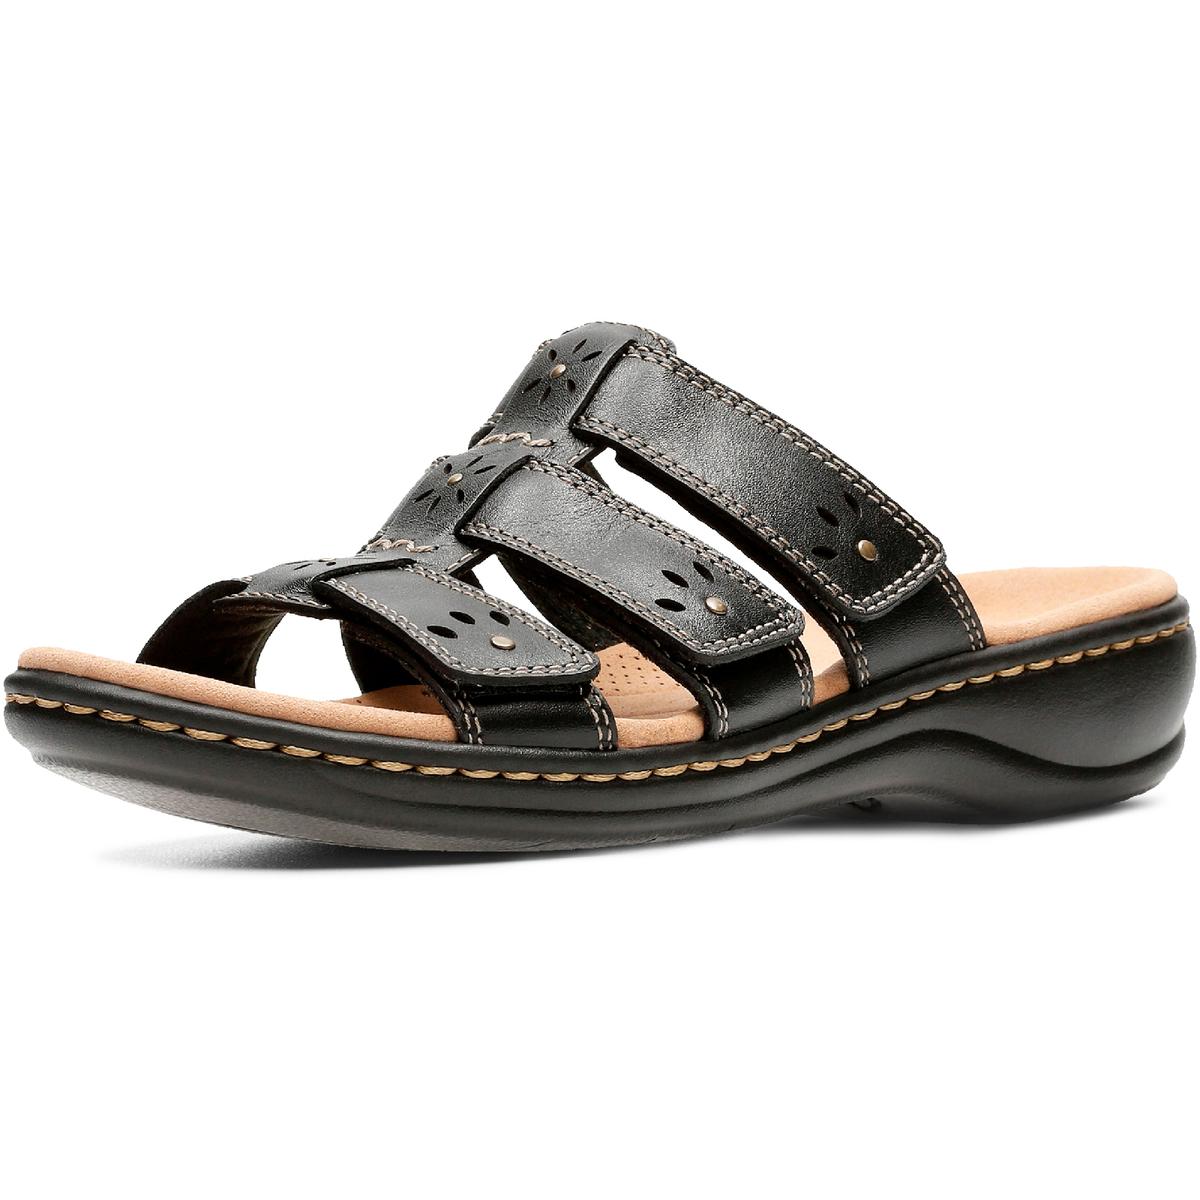 Clarks Leisa Spring Womens Leather Slip On Slide Sandals